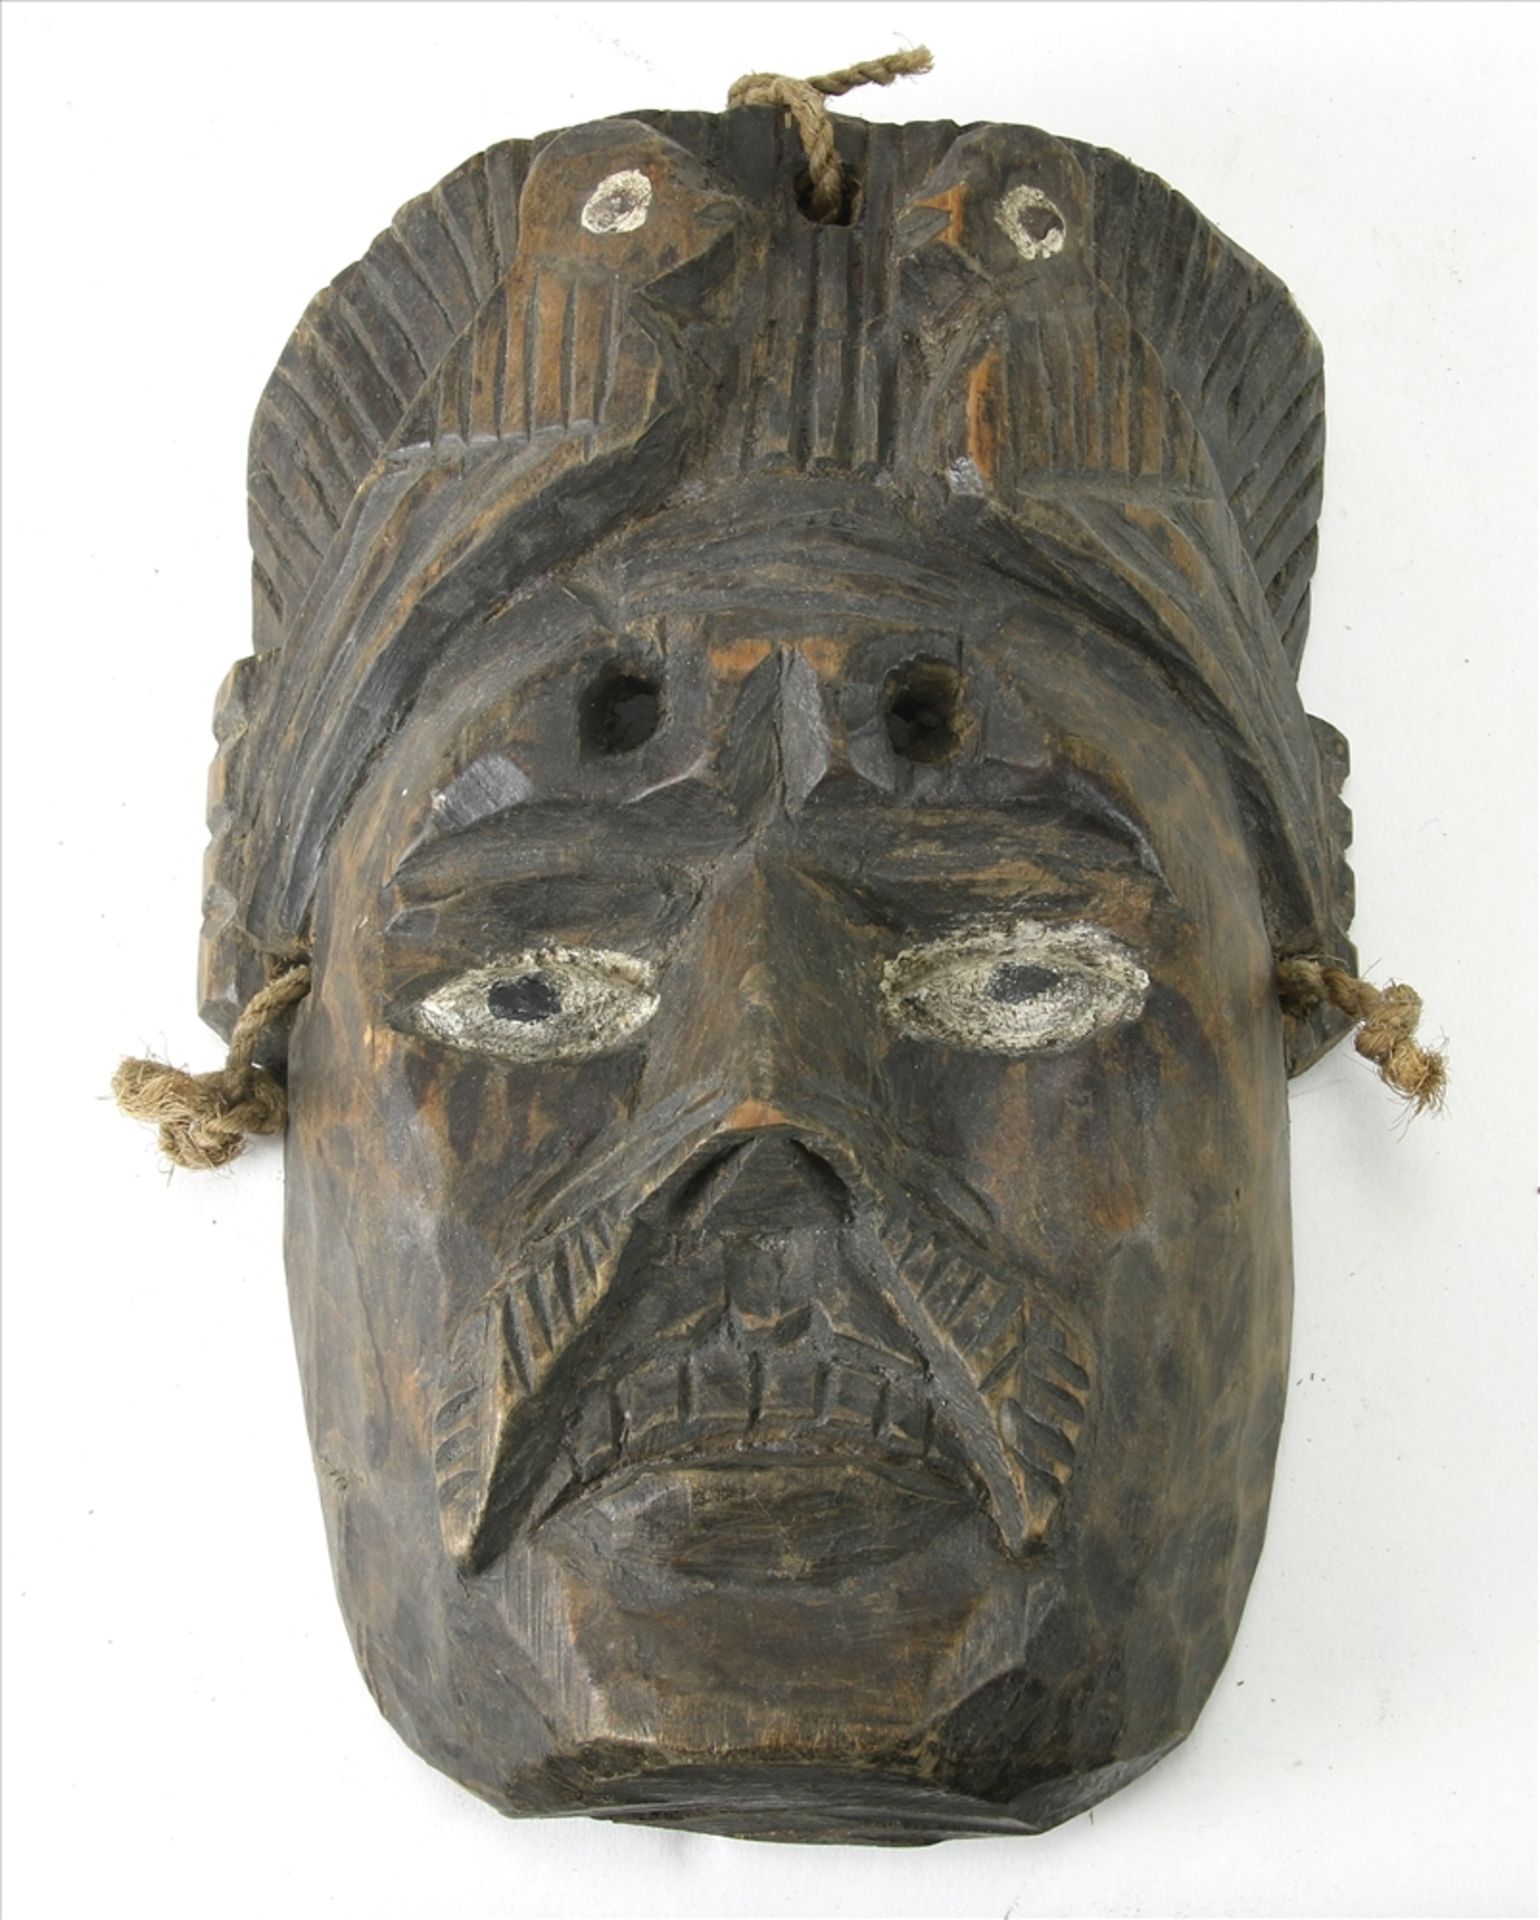 Maske Wohl Kongo um 1900. Hartholz, teils mit Vögeln geschnitzt, die Augen staffiert. Größe ca. 24,5